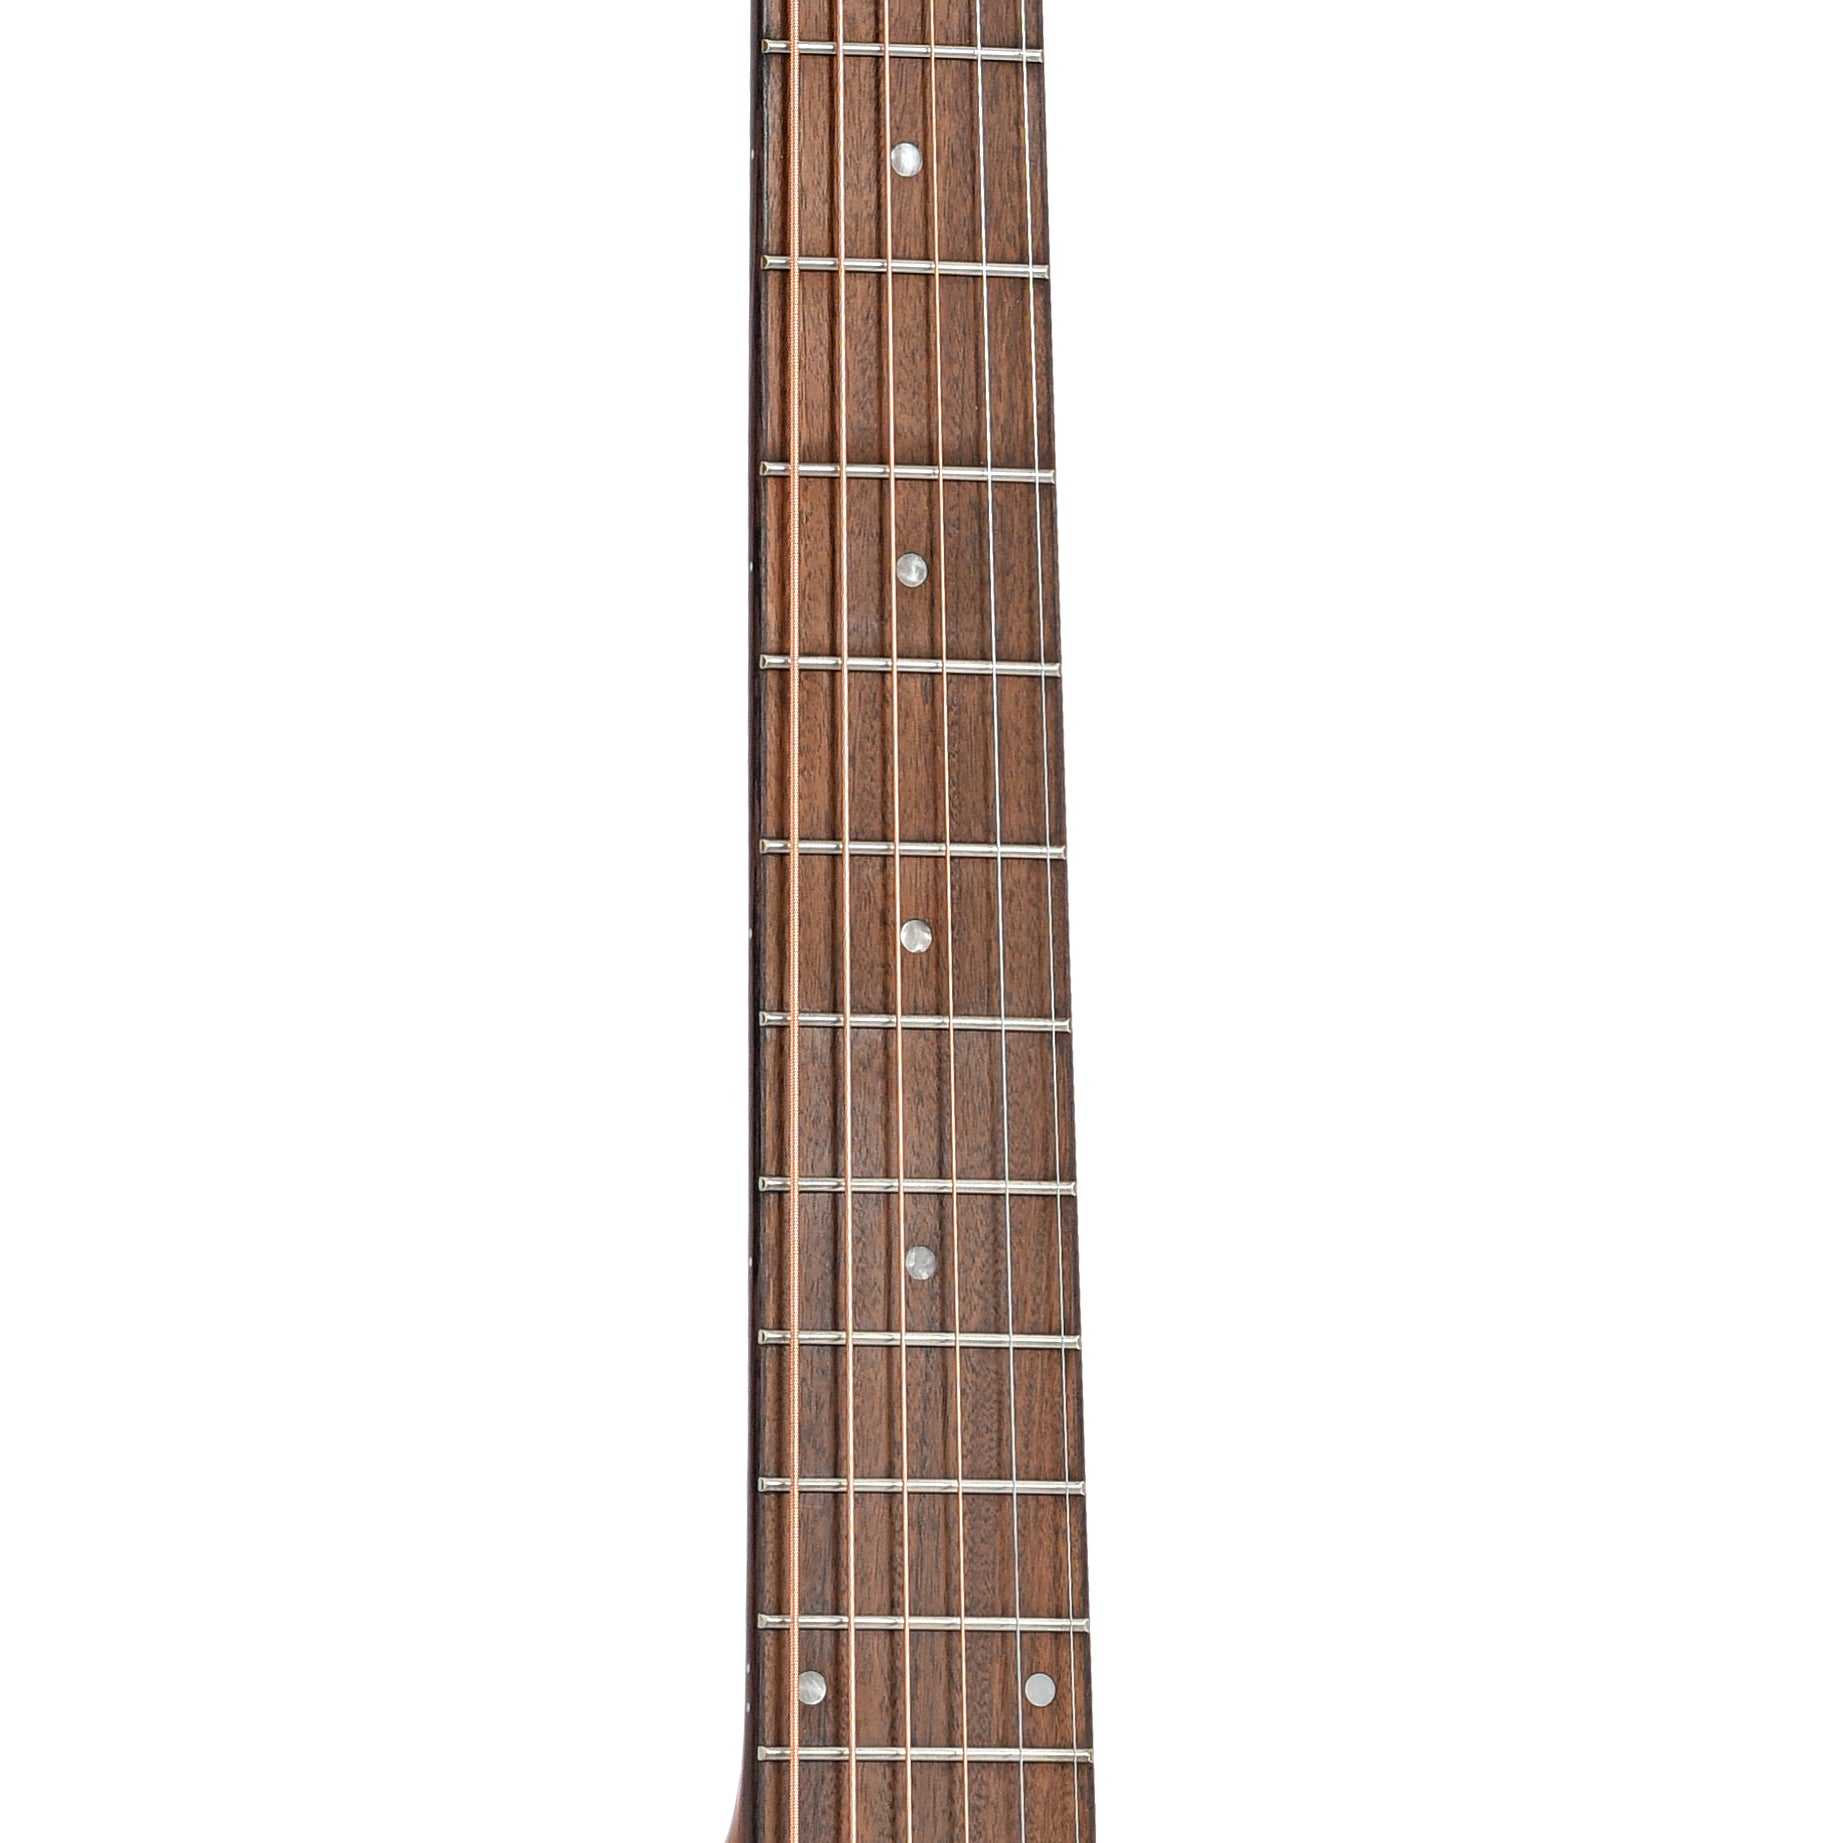 Fretboard of Guild OM-250E Limited Archback Natural Acoustic Guitar